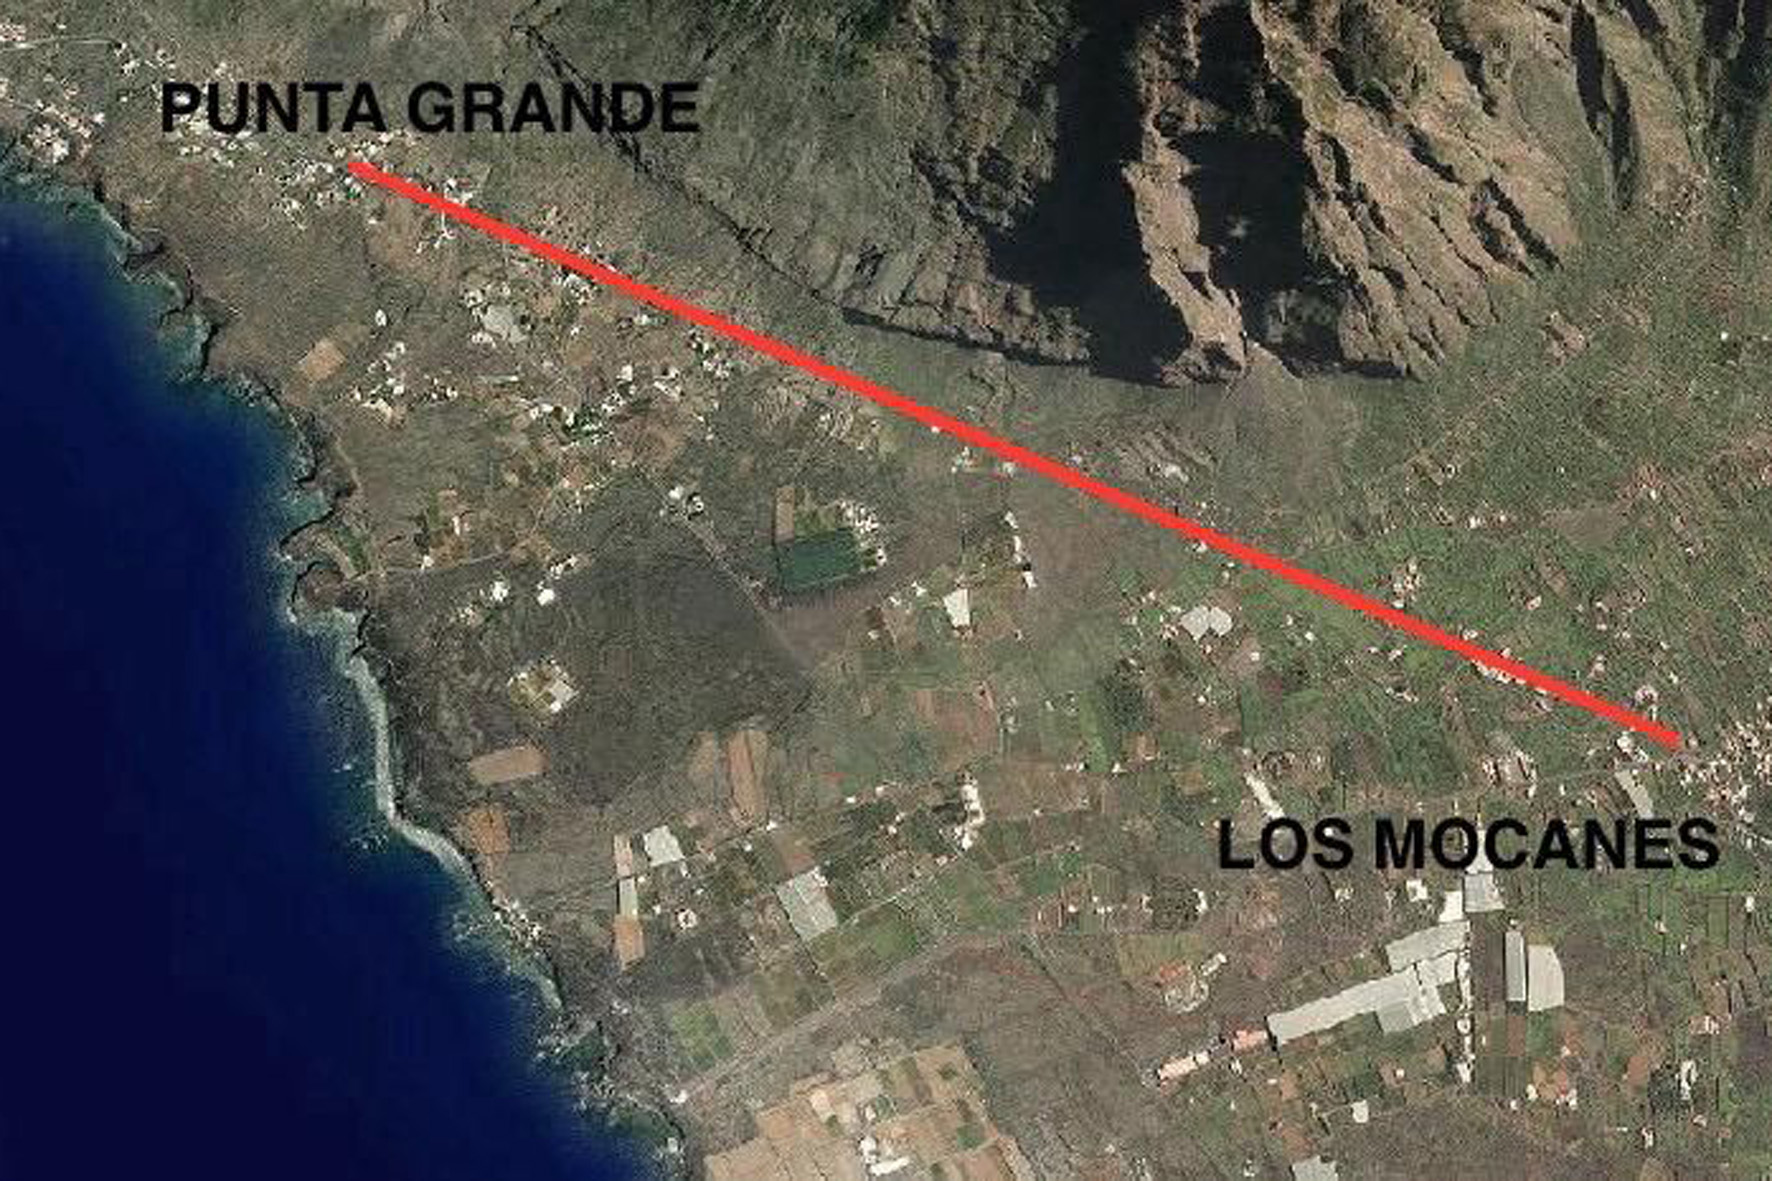 El Cabildo realiza una consulta pública sobre el Ecopaseo ciclista entre Los Mocanes - Punta Grande en La Frontera